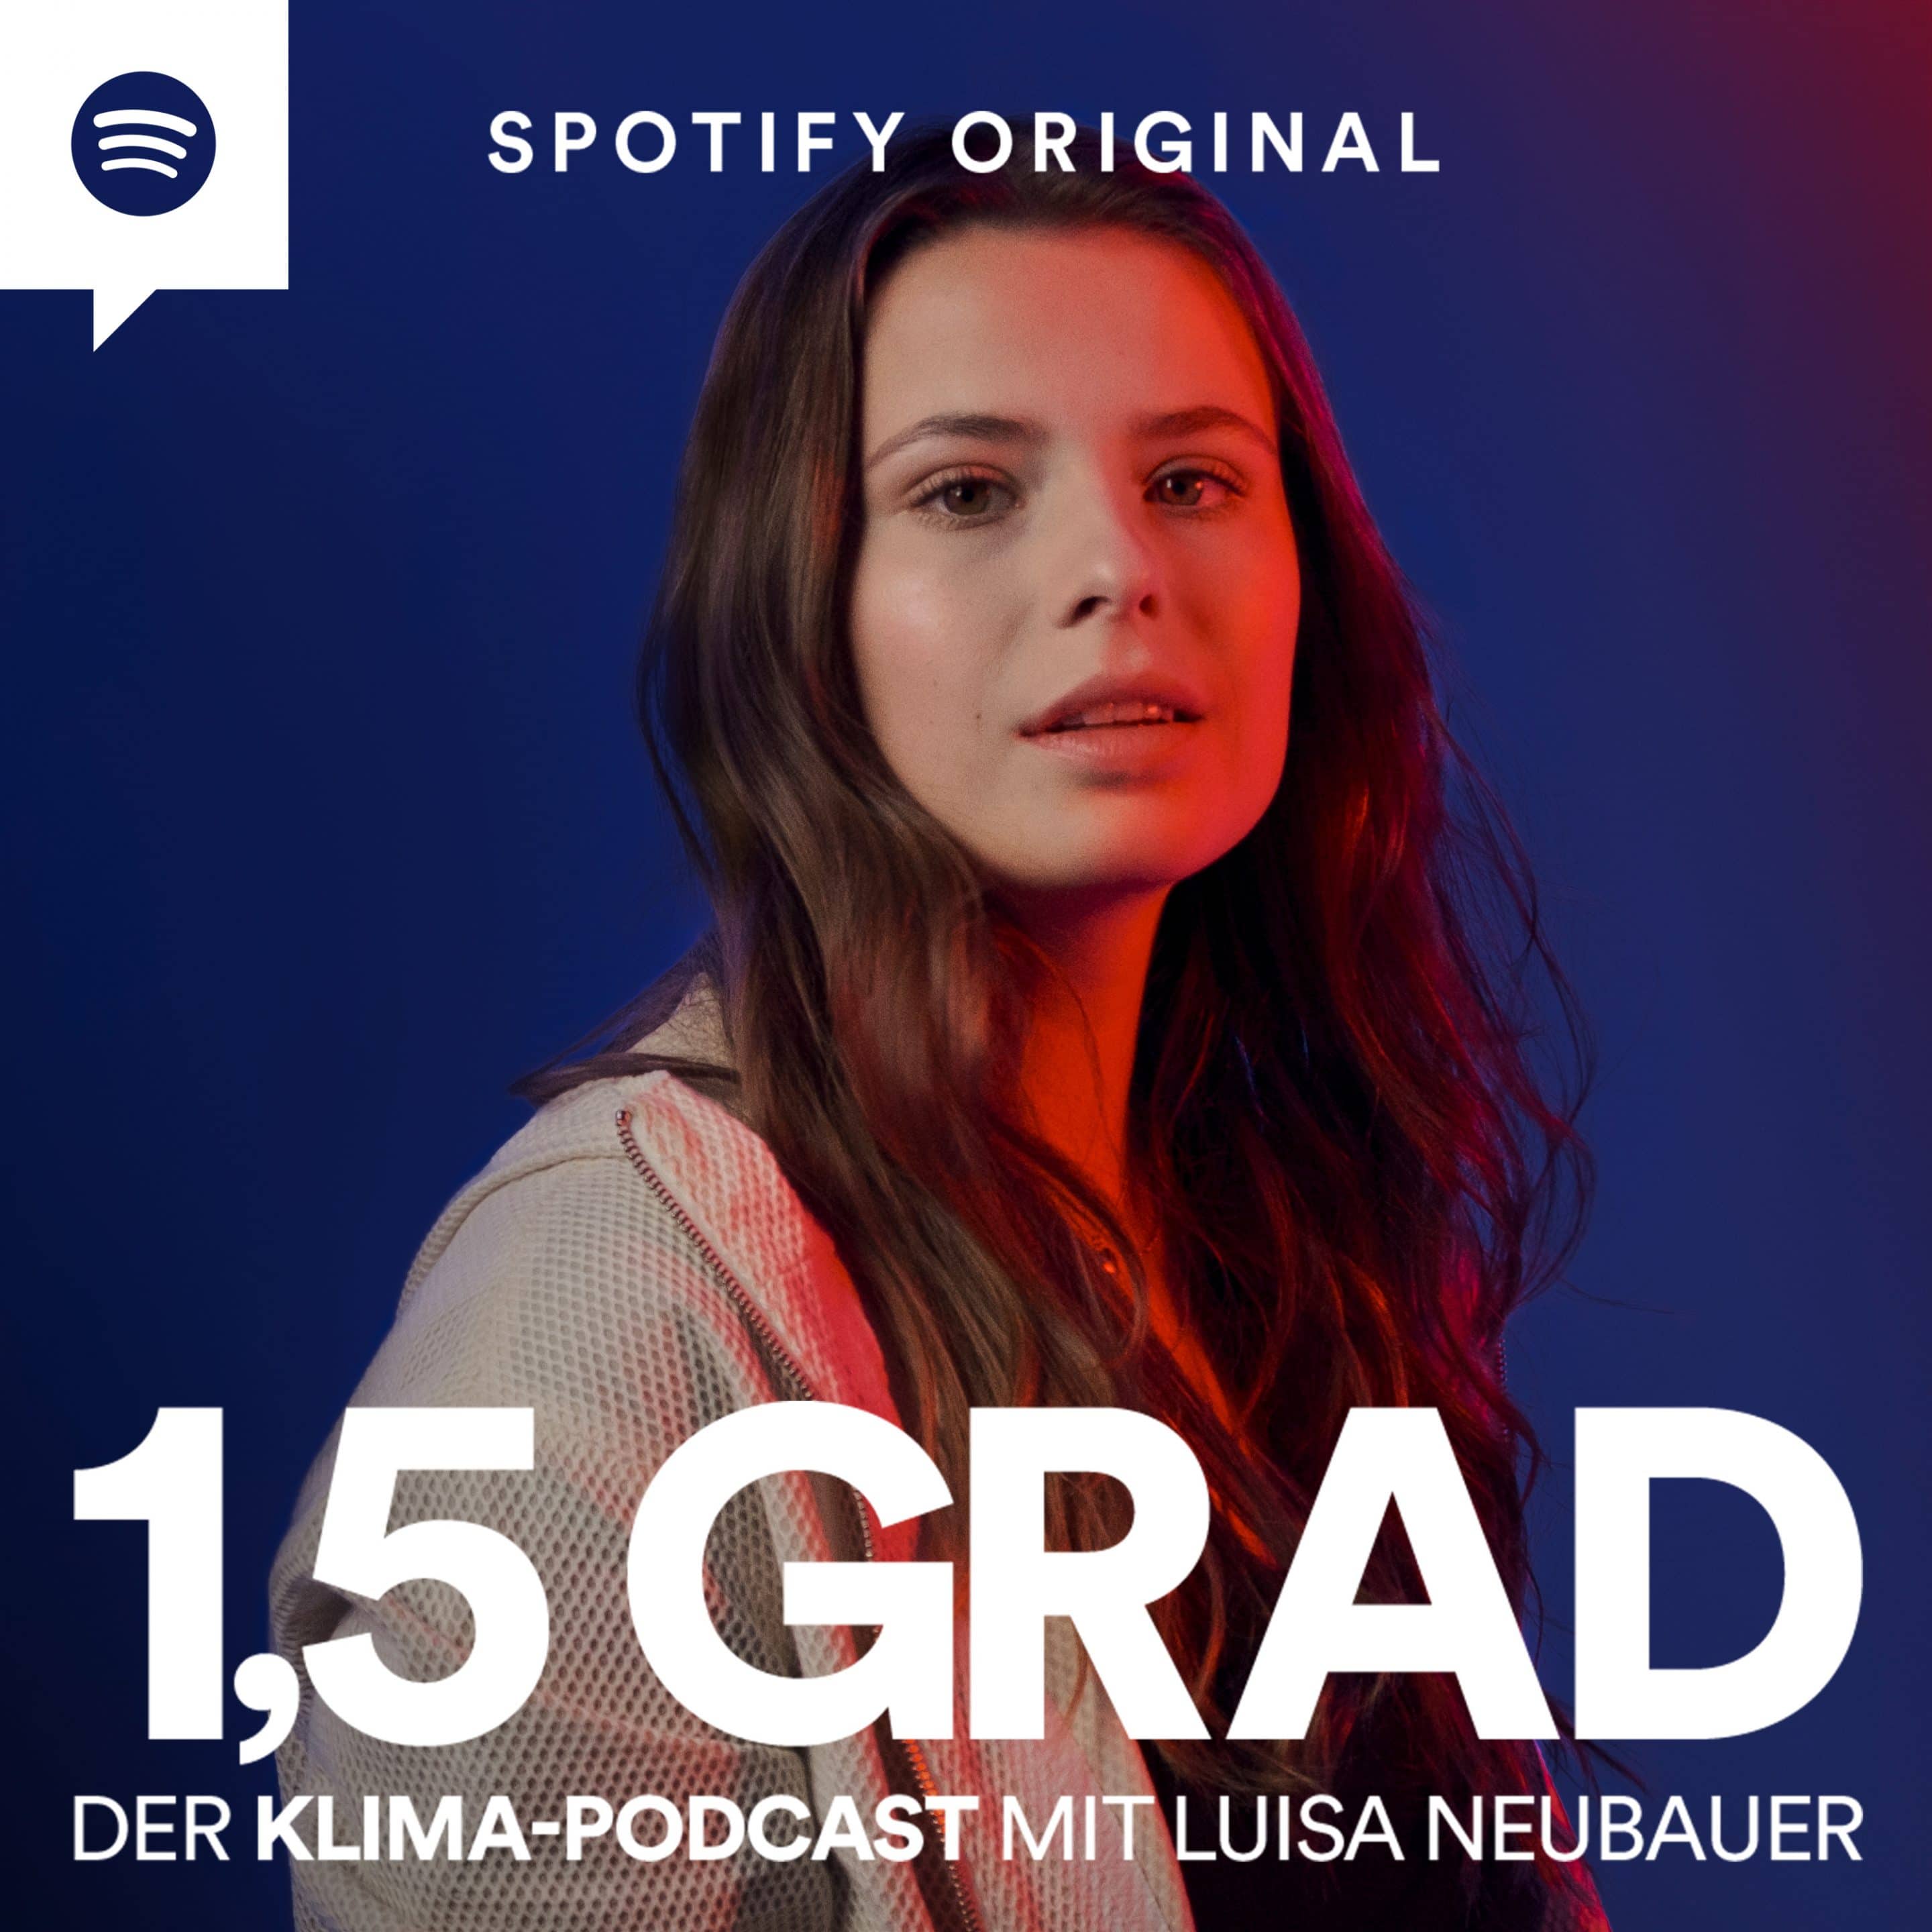 Klima-Podcast auf Spotify 50 Klima Podcast Luisa Neubauer scaled